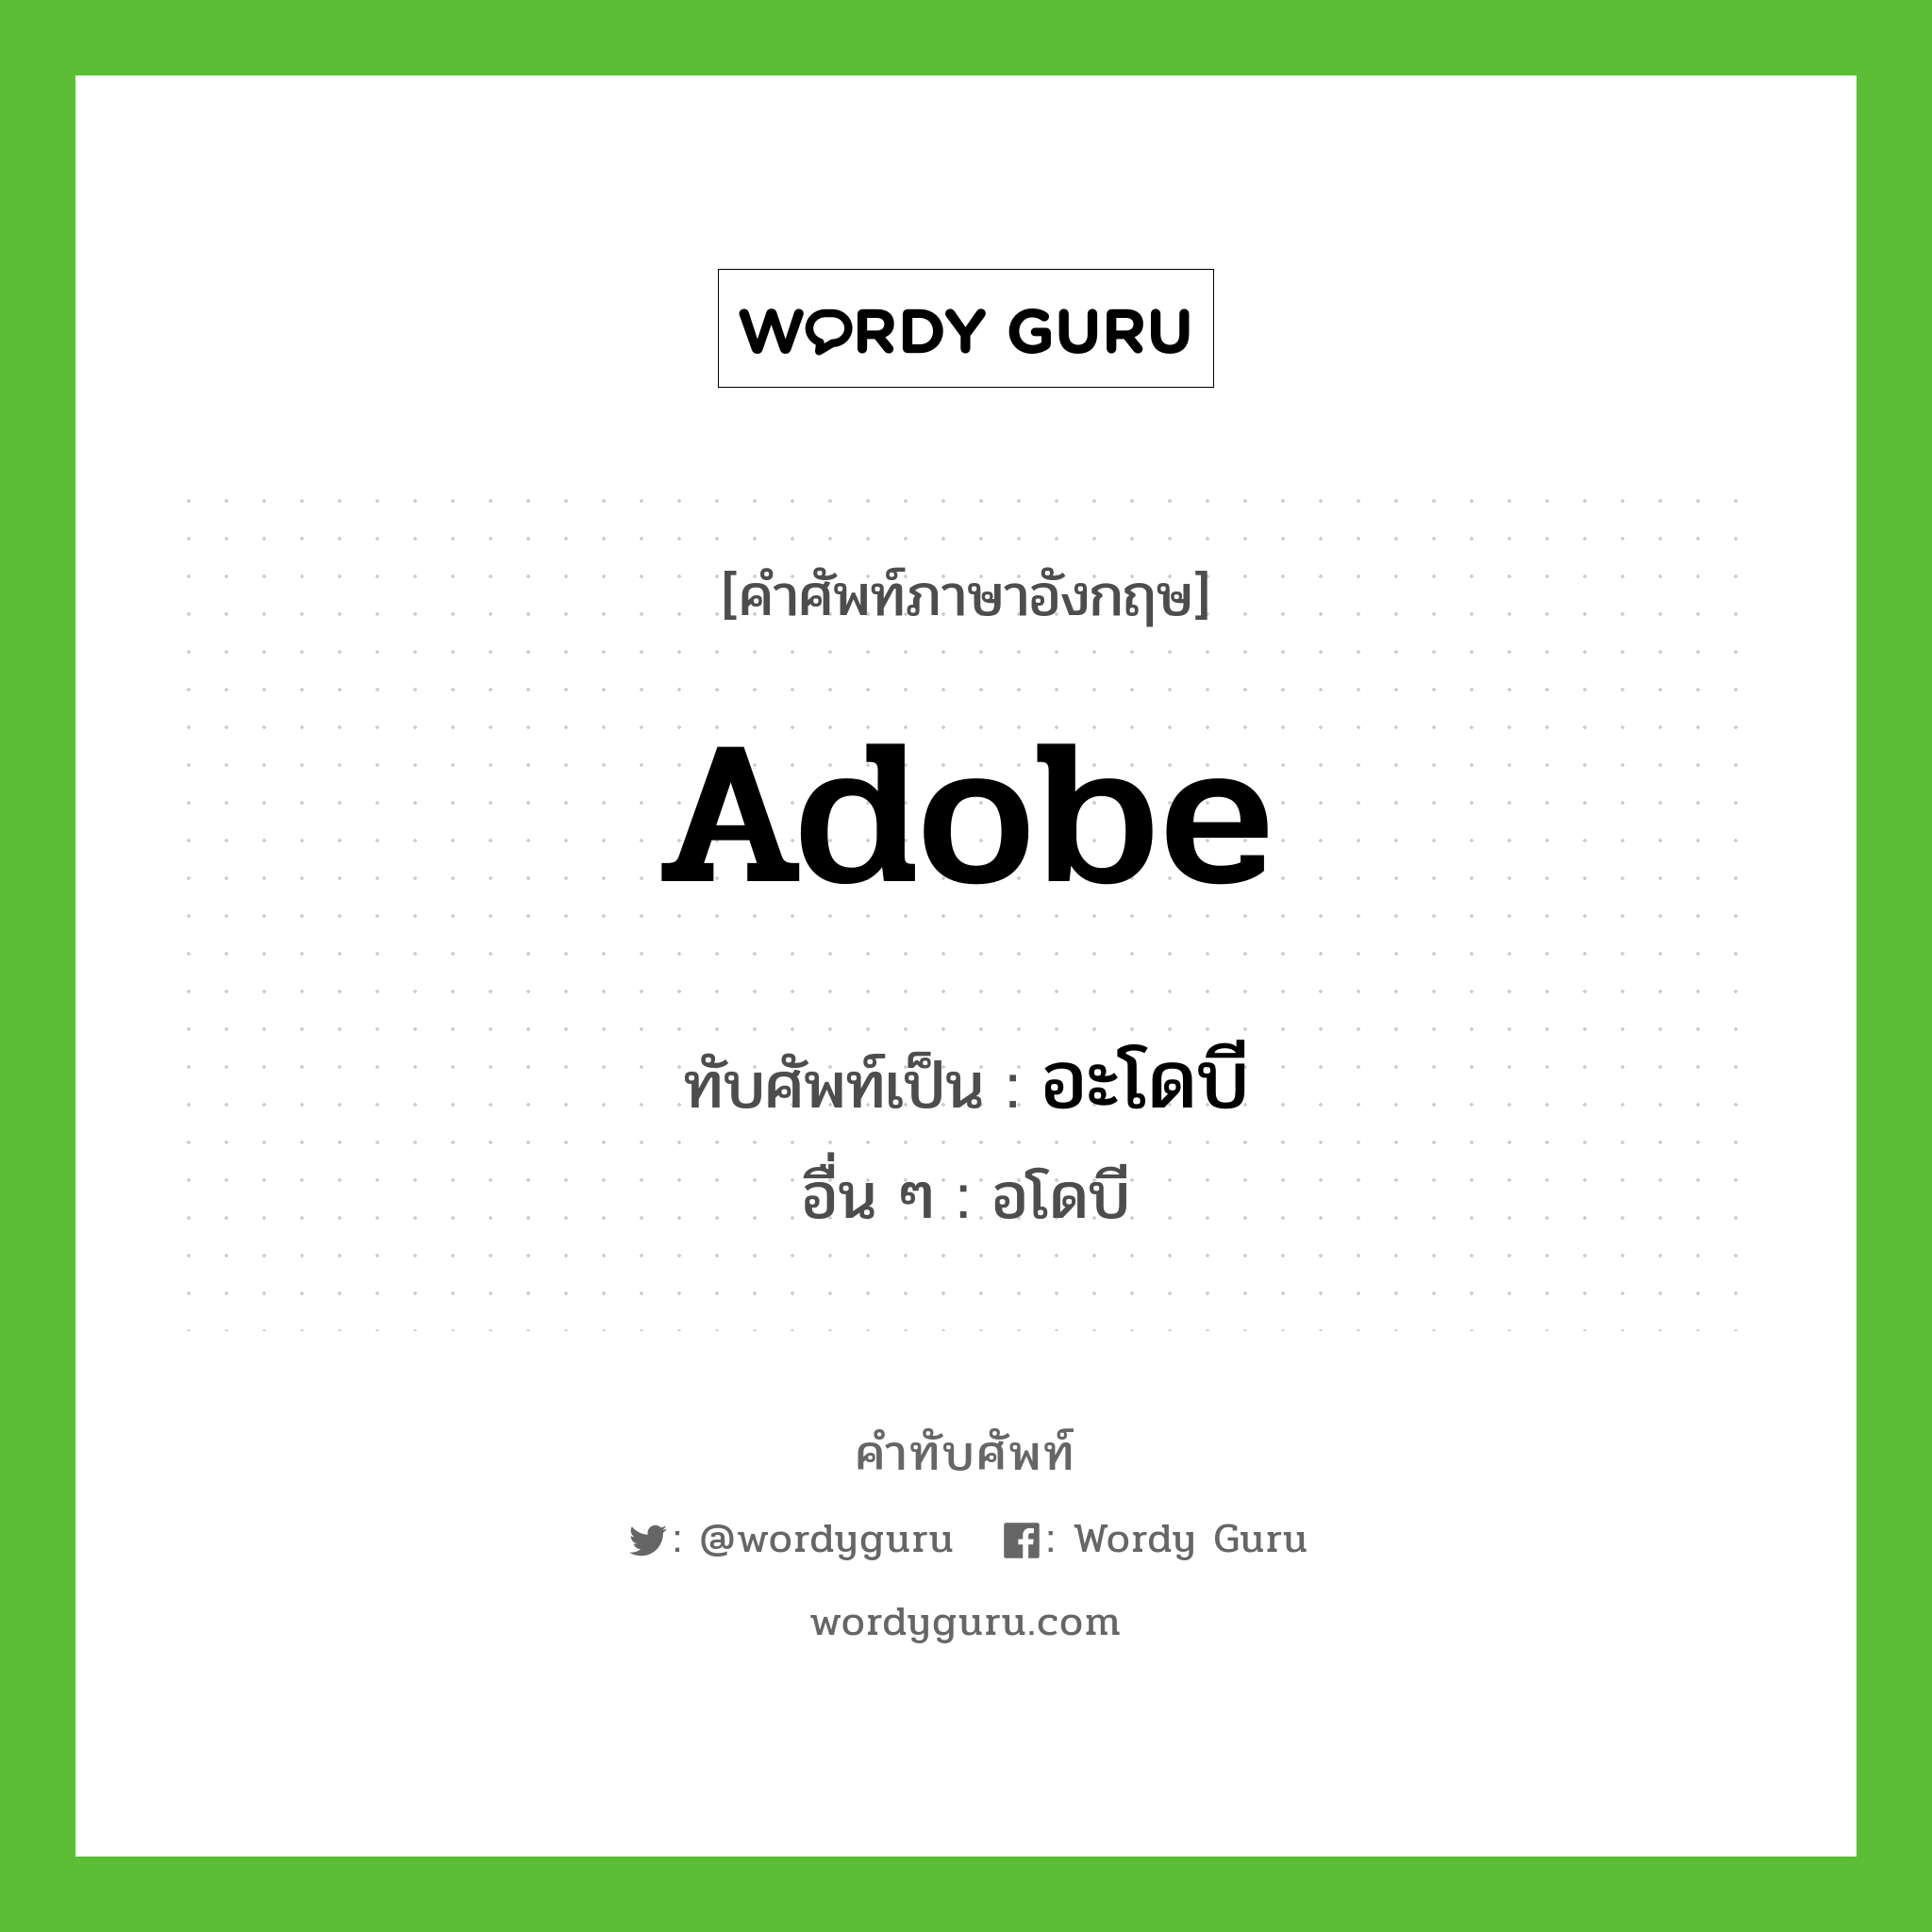 อะโดบี เขียนอย่างไร?, คำศัพท์ภาษาอังกฤษ อะโดบี ทับศัพท์เป็น Adobe อื่น ๆ อโดบี